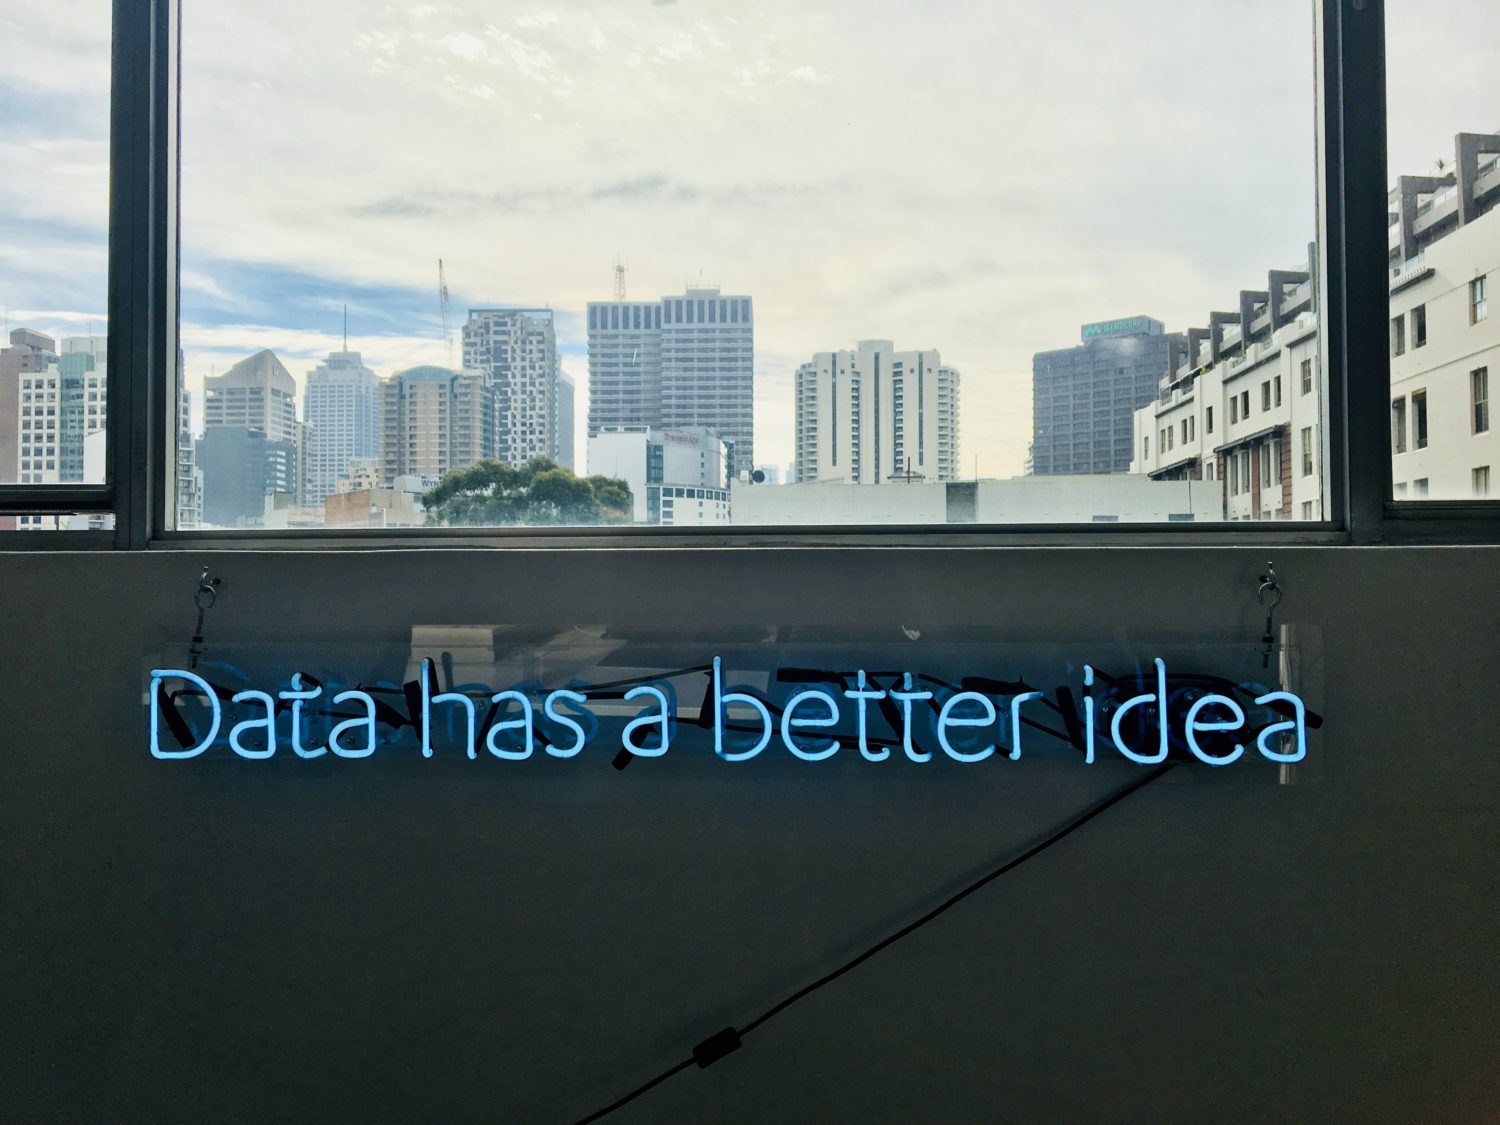 Schriftzug "Data has a better idea"